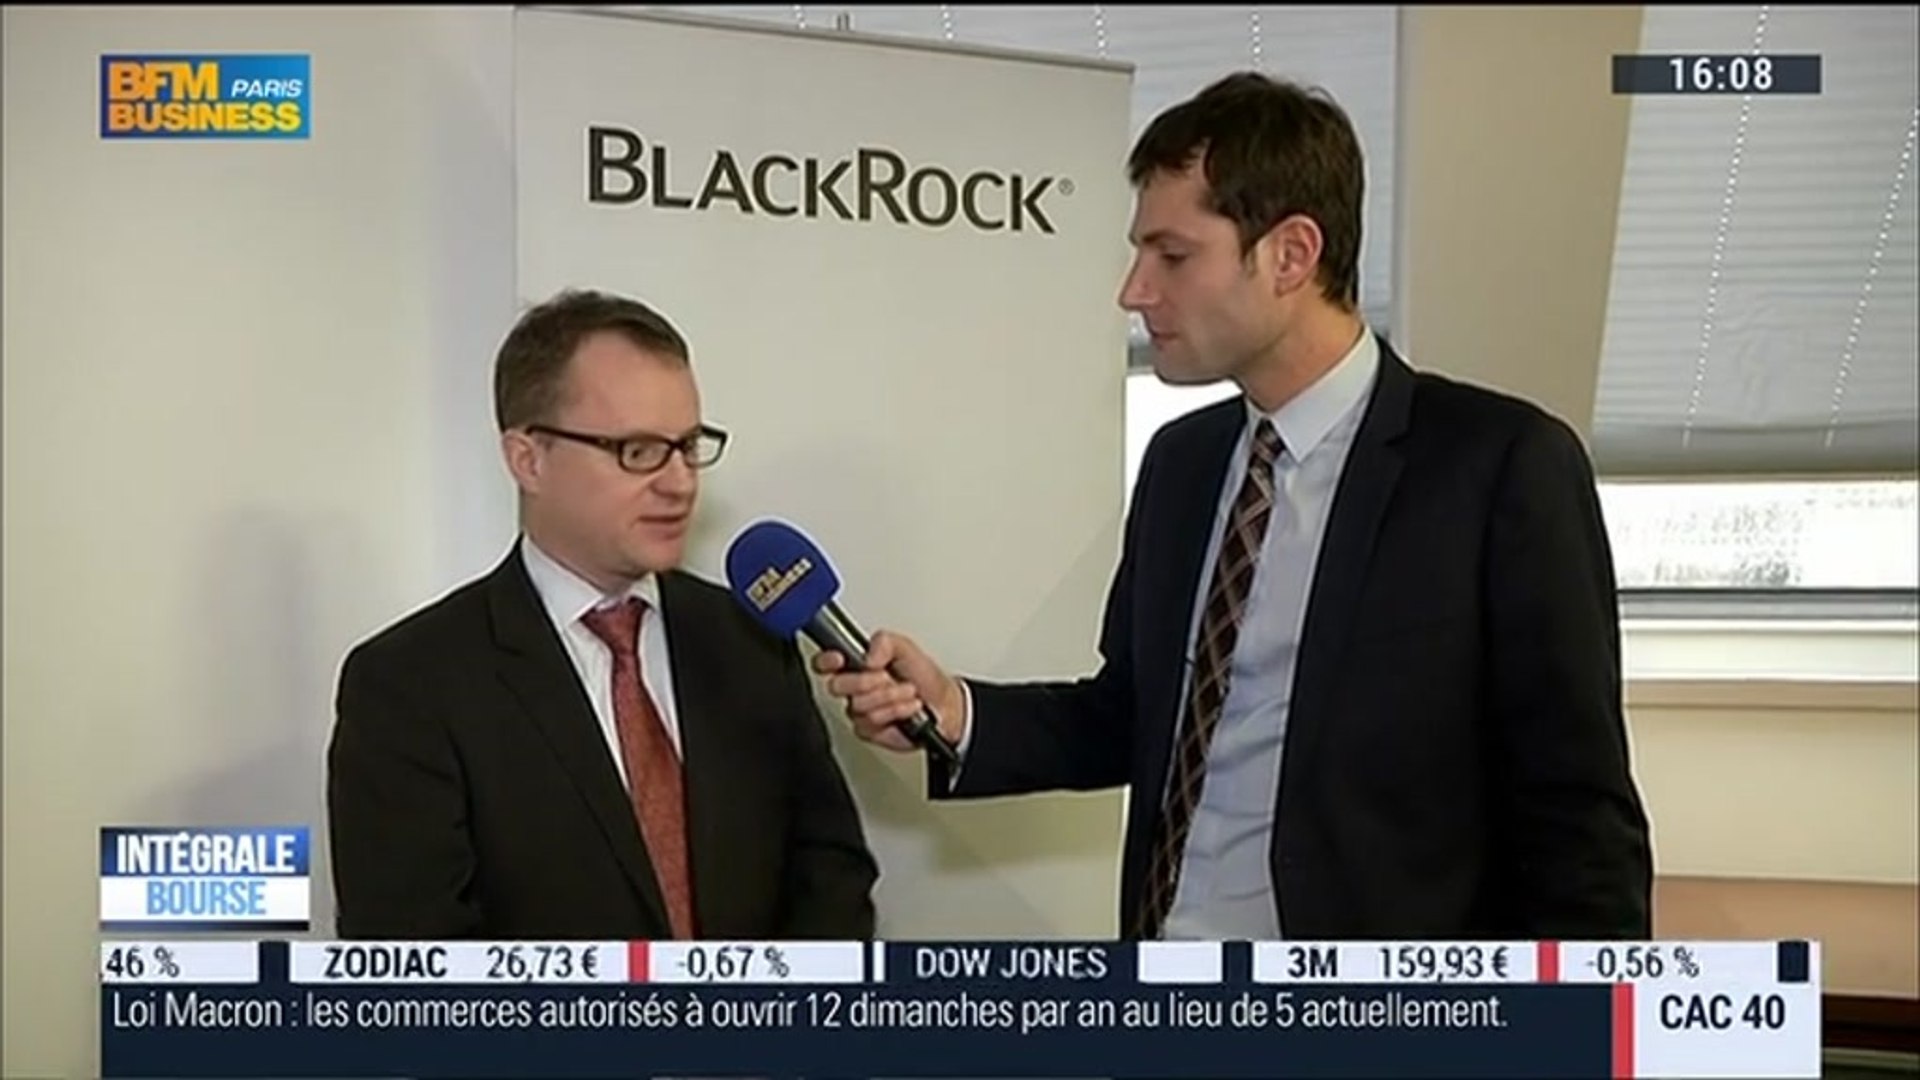 Vision de Blackrock: Quelles sont les perspectives de marchés et scenarii  pour 2015 ?: Jean Boivin – 10/12 - Vidéo Dailymotion